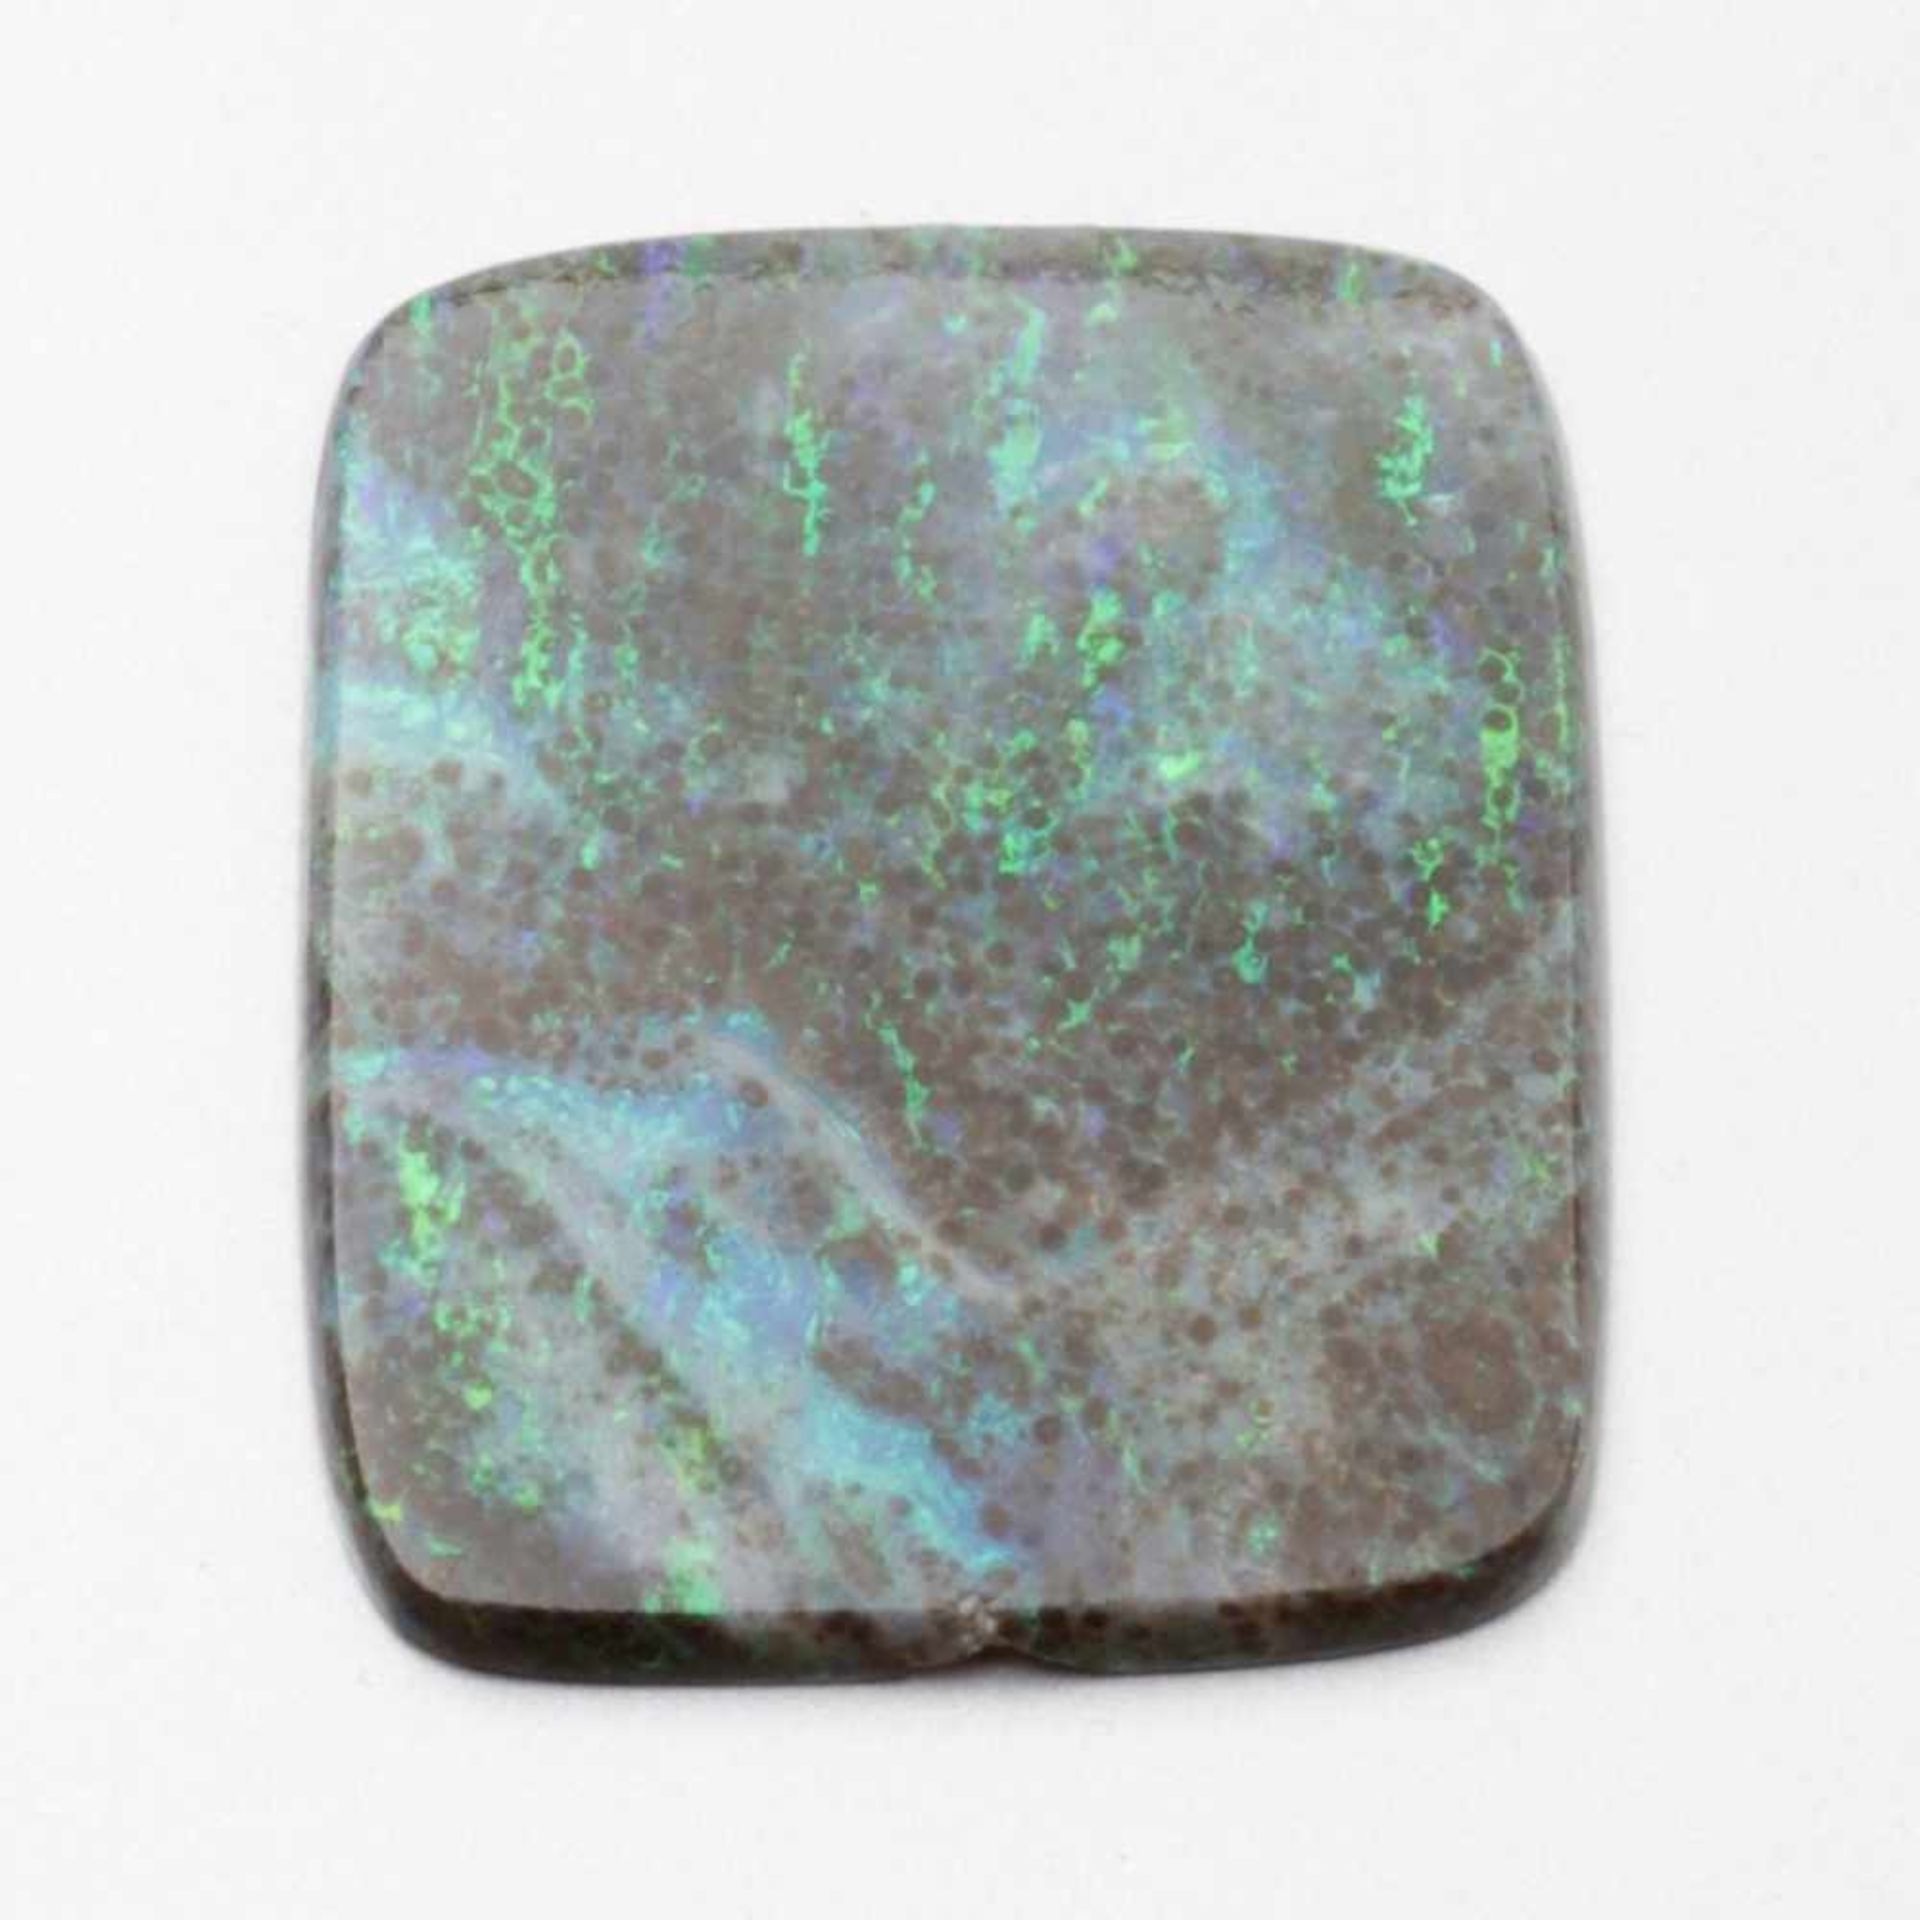 Opal-Scheibe1 Opal. Gewicht: 6,1g. Maße: 3,38 x 2,86 x 0,34cm. Unterseitig ein Chip.